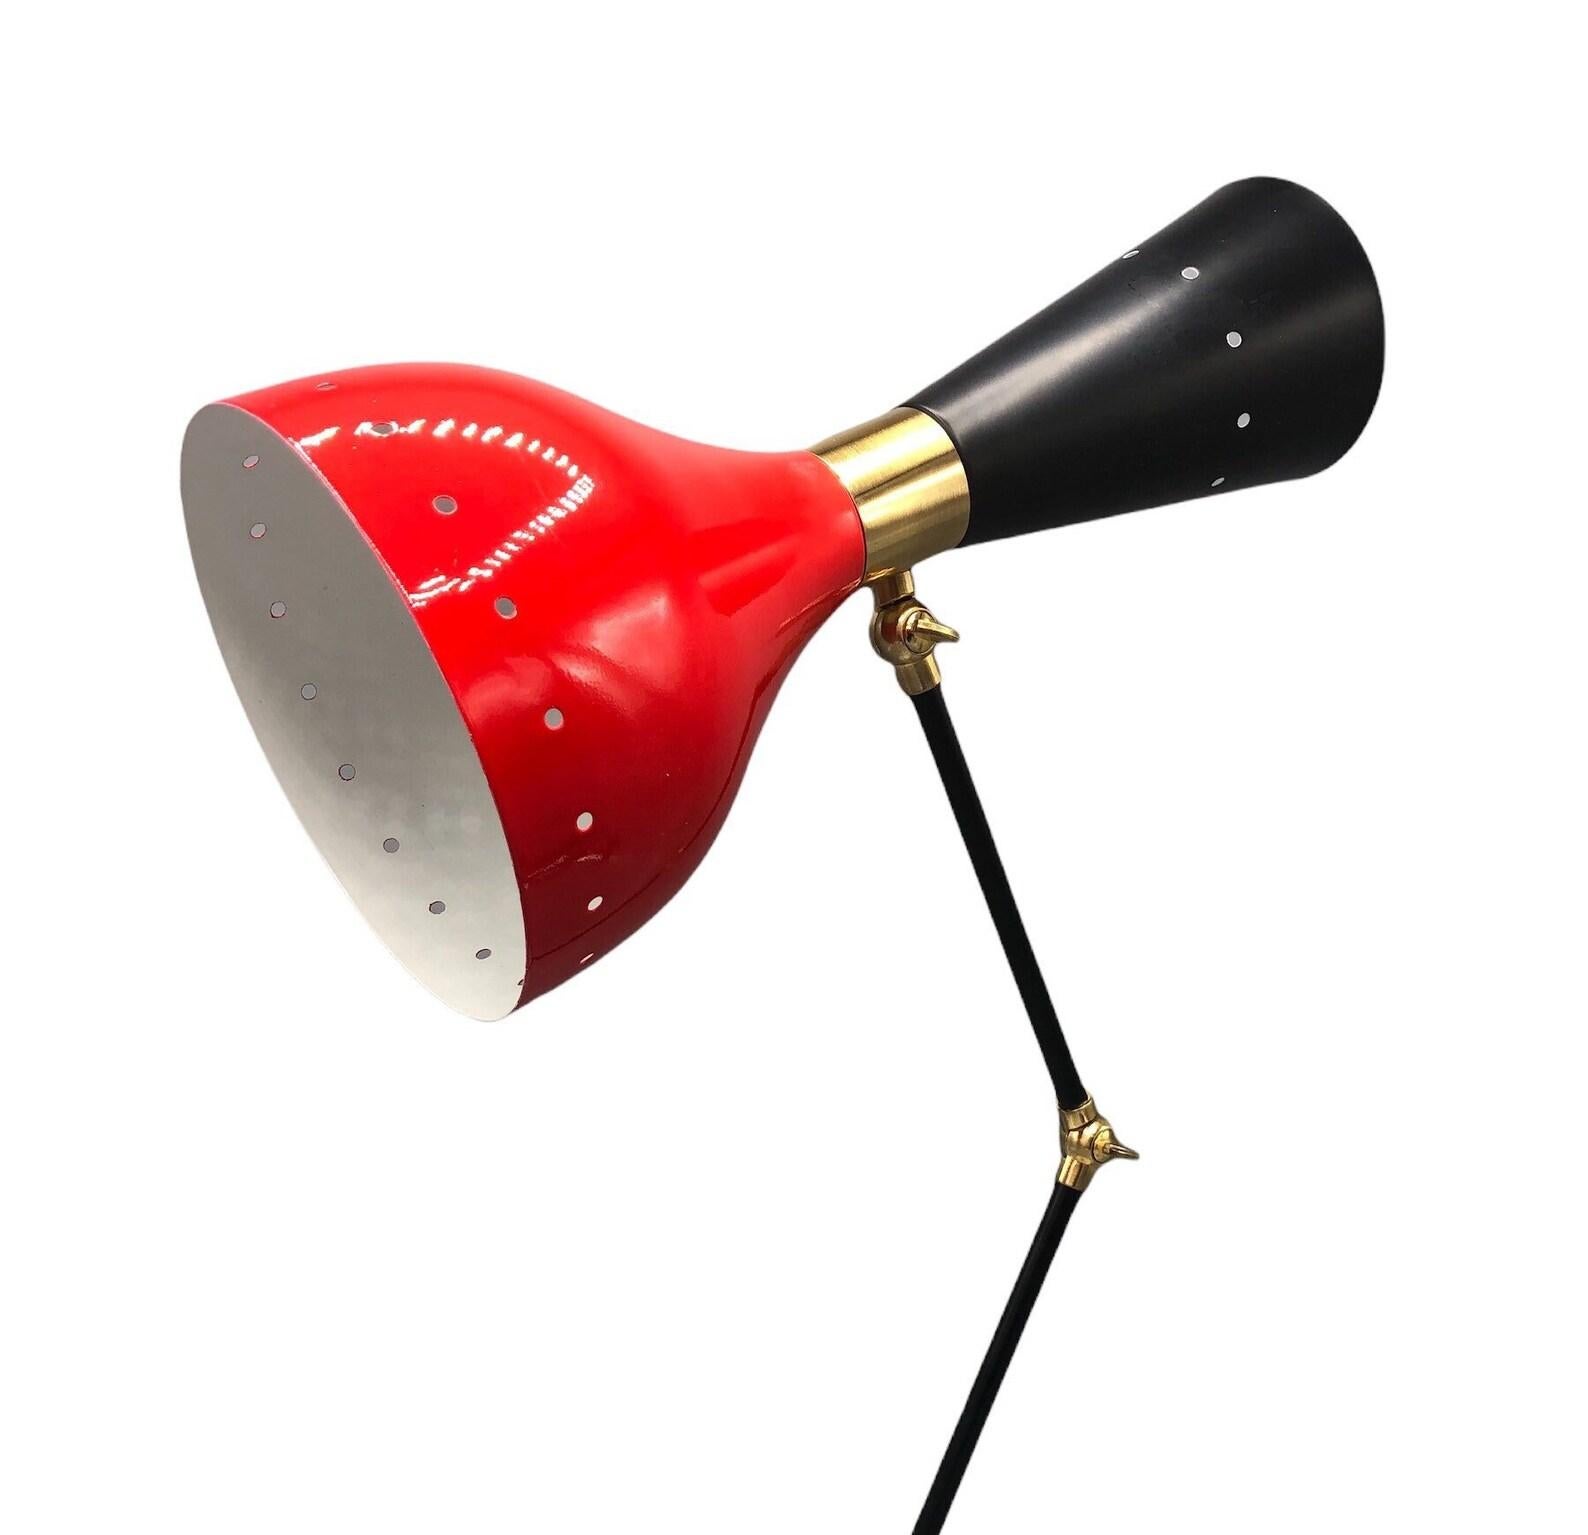 Lampe de bureau réglable en laiton moderne avec base en marbre style italien. Abat-jour rouge et bras noirs avec quincaillerie en laiton. 
Dimensions : 
Diamètre du marbre de la base : 7